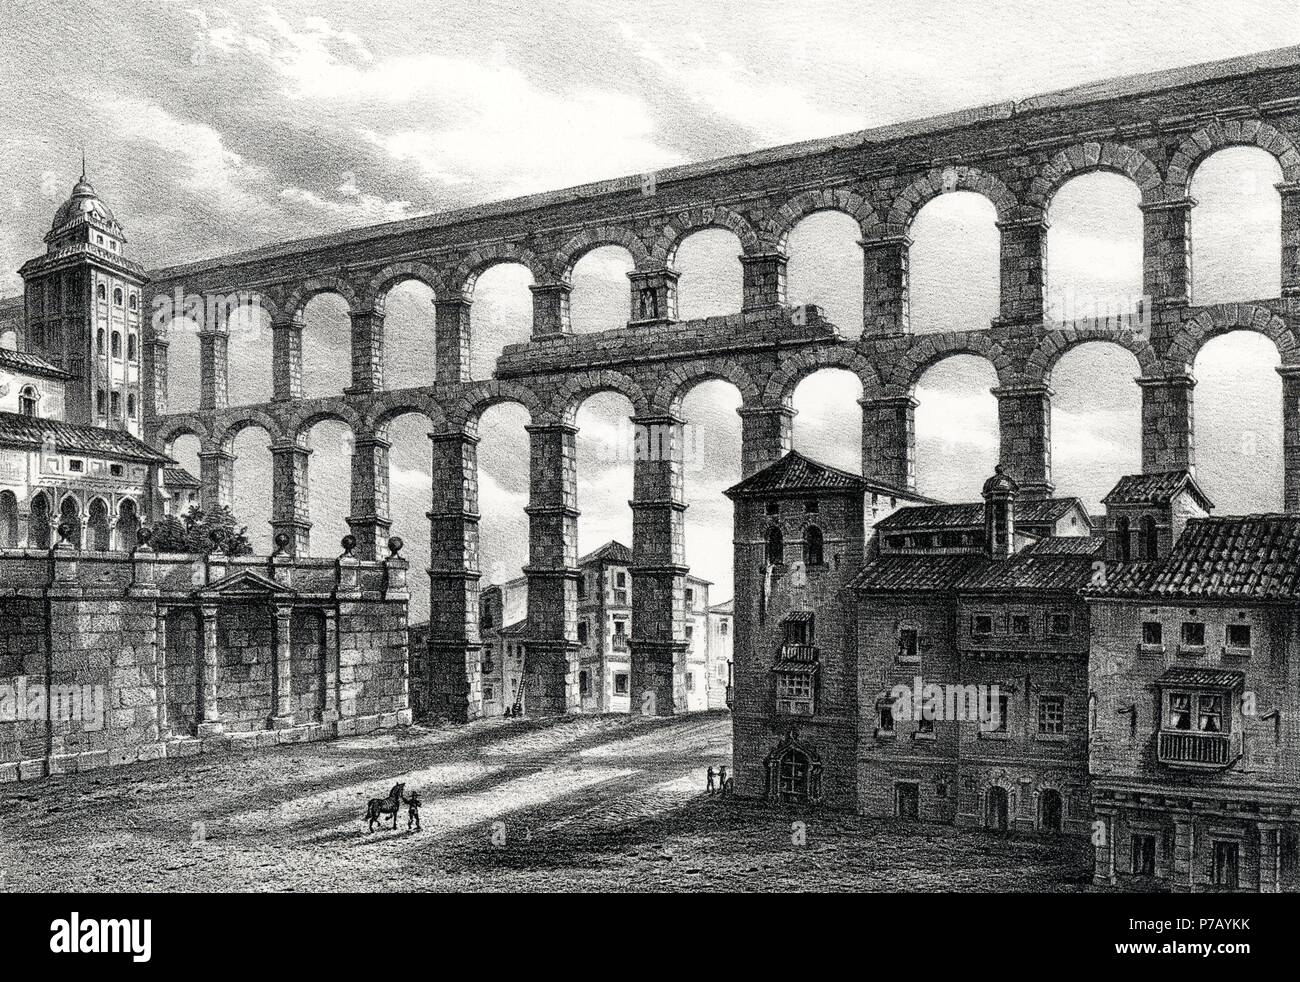 Historia. Acueducto de Segovia construído en el siglo II en época del emperador Trajano. Grabado de 1871. Stock Photo